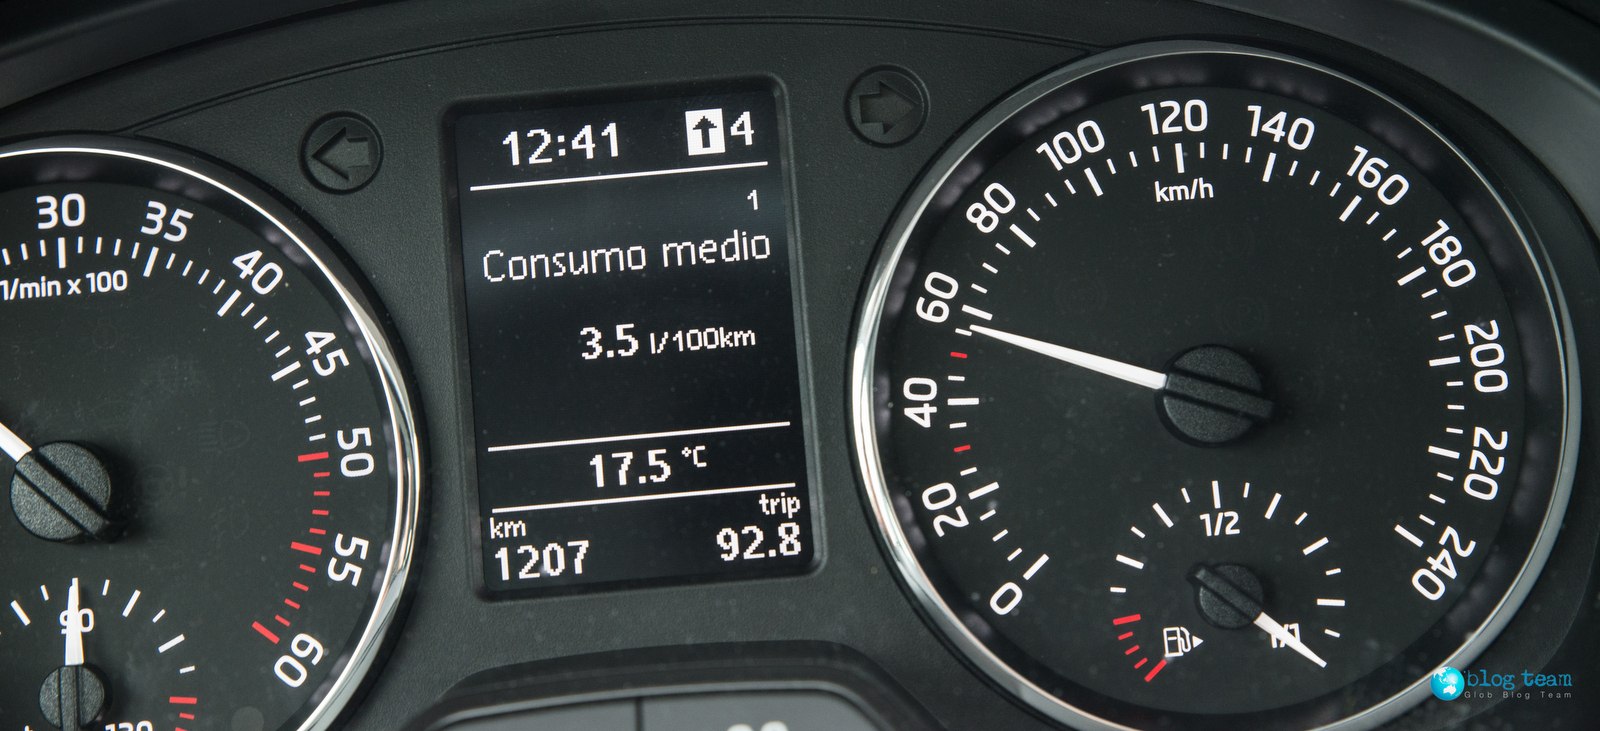 Skoda Rapid 1.6 TDI Eco Driving 3.5l/100km! 